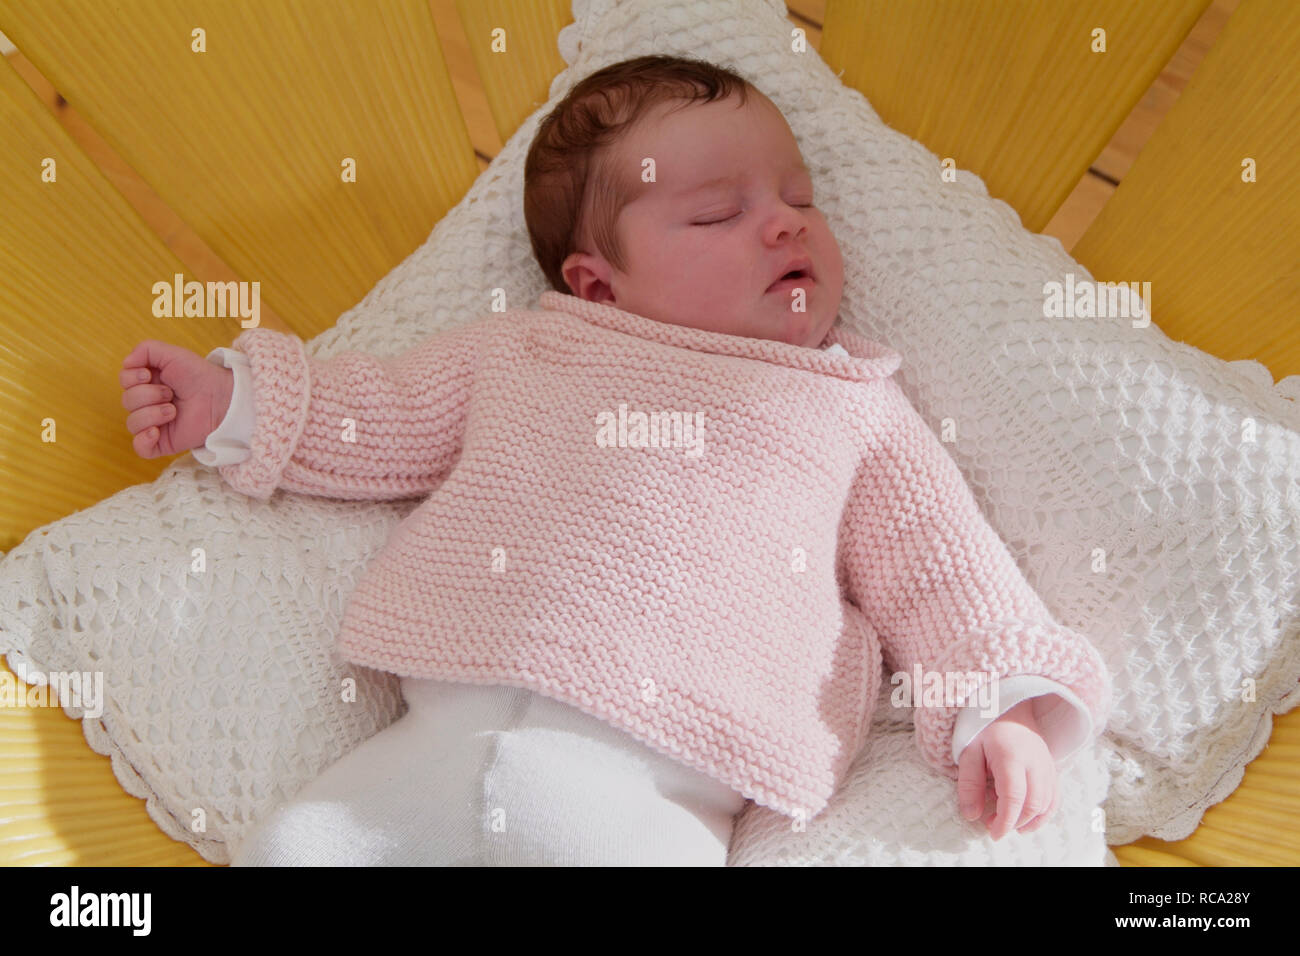 neugeborenes Baby liegt auf einem Kissen, das Kind ist 12 Tage alt | new born baby lying on a cushion - the baby ist 12 days old. Stock Photo